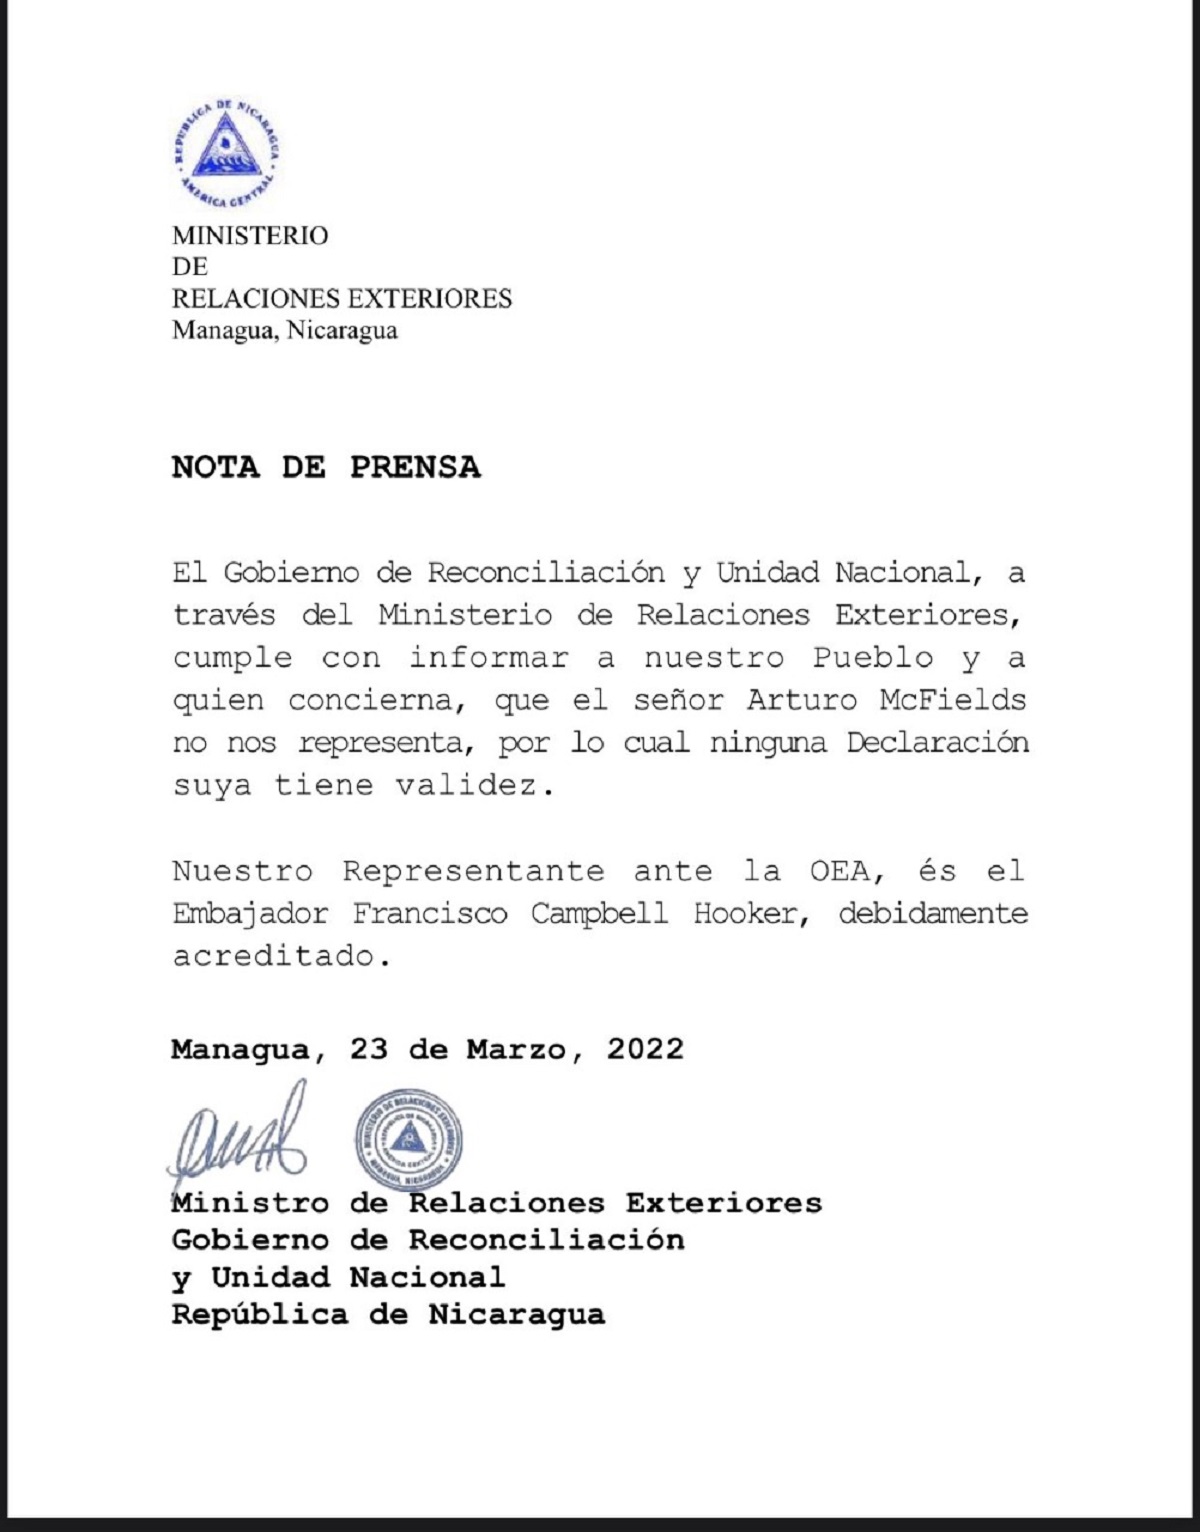 Nota de prensa minrex nicaragua 23 de marzo 2022